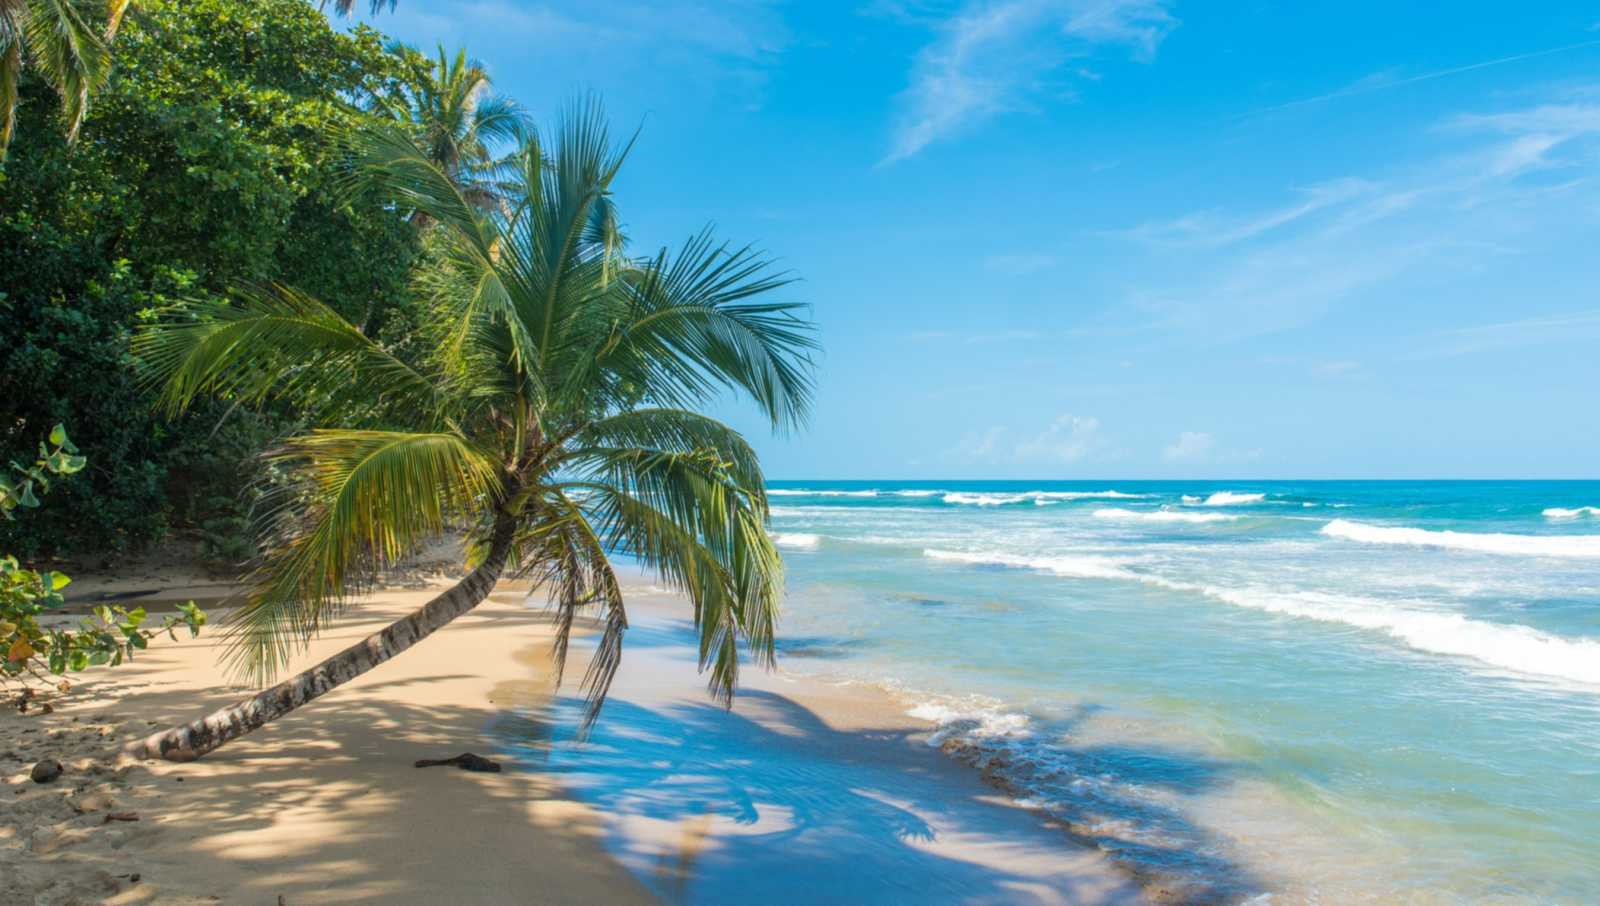 Playa Chiquita - Strand in der Nähe von Puerto Viejo, Costa Rica 